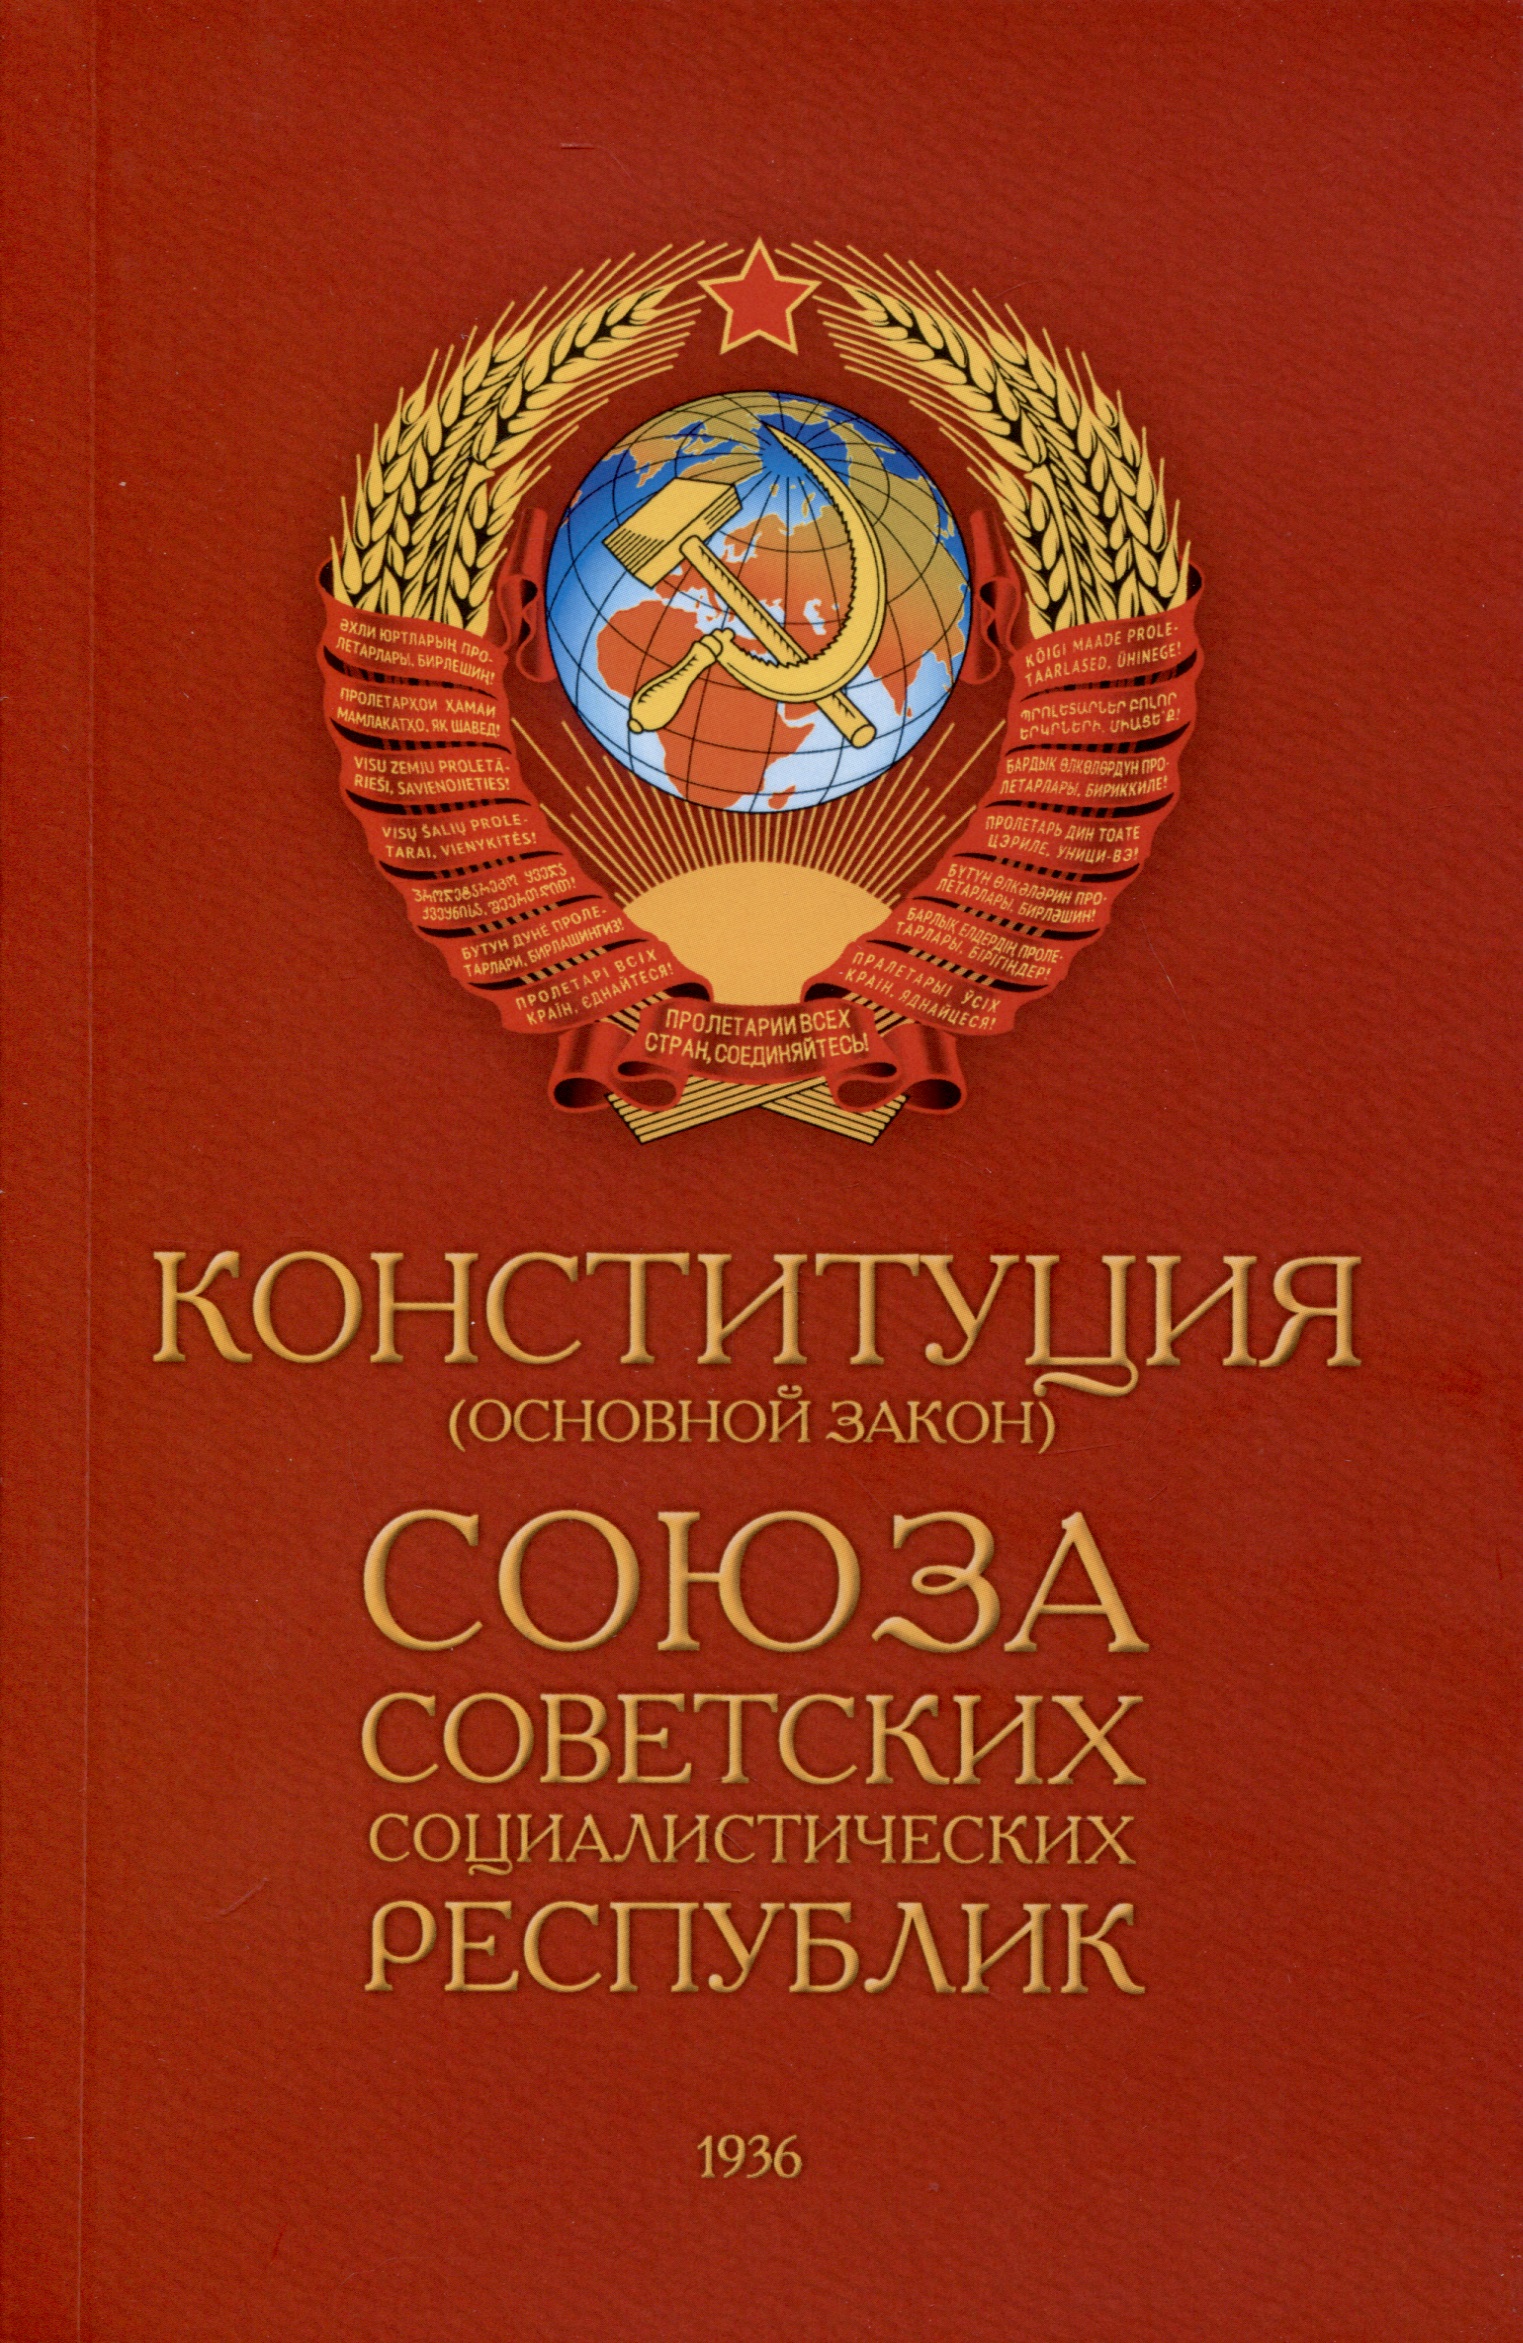 Конституция 1936 республик